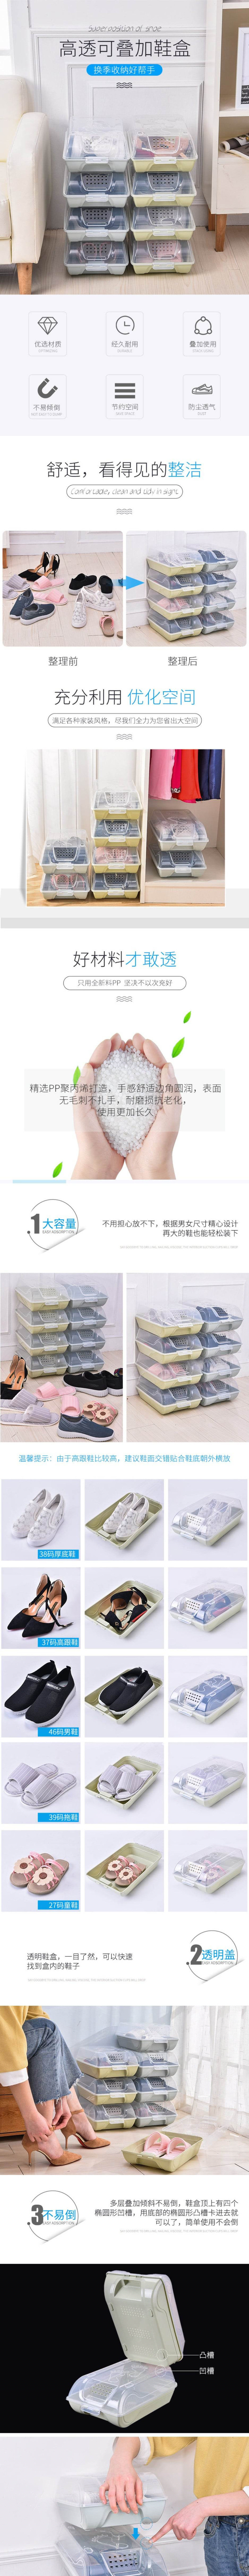  FantianHome 塑料透明防尘鞋盒 透气收纳盒 可叠加整理2个装